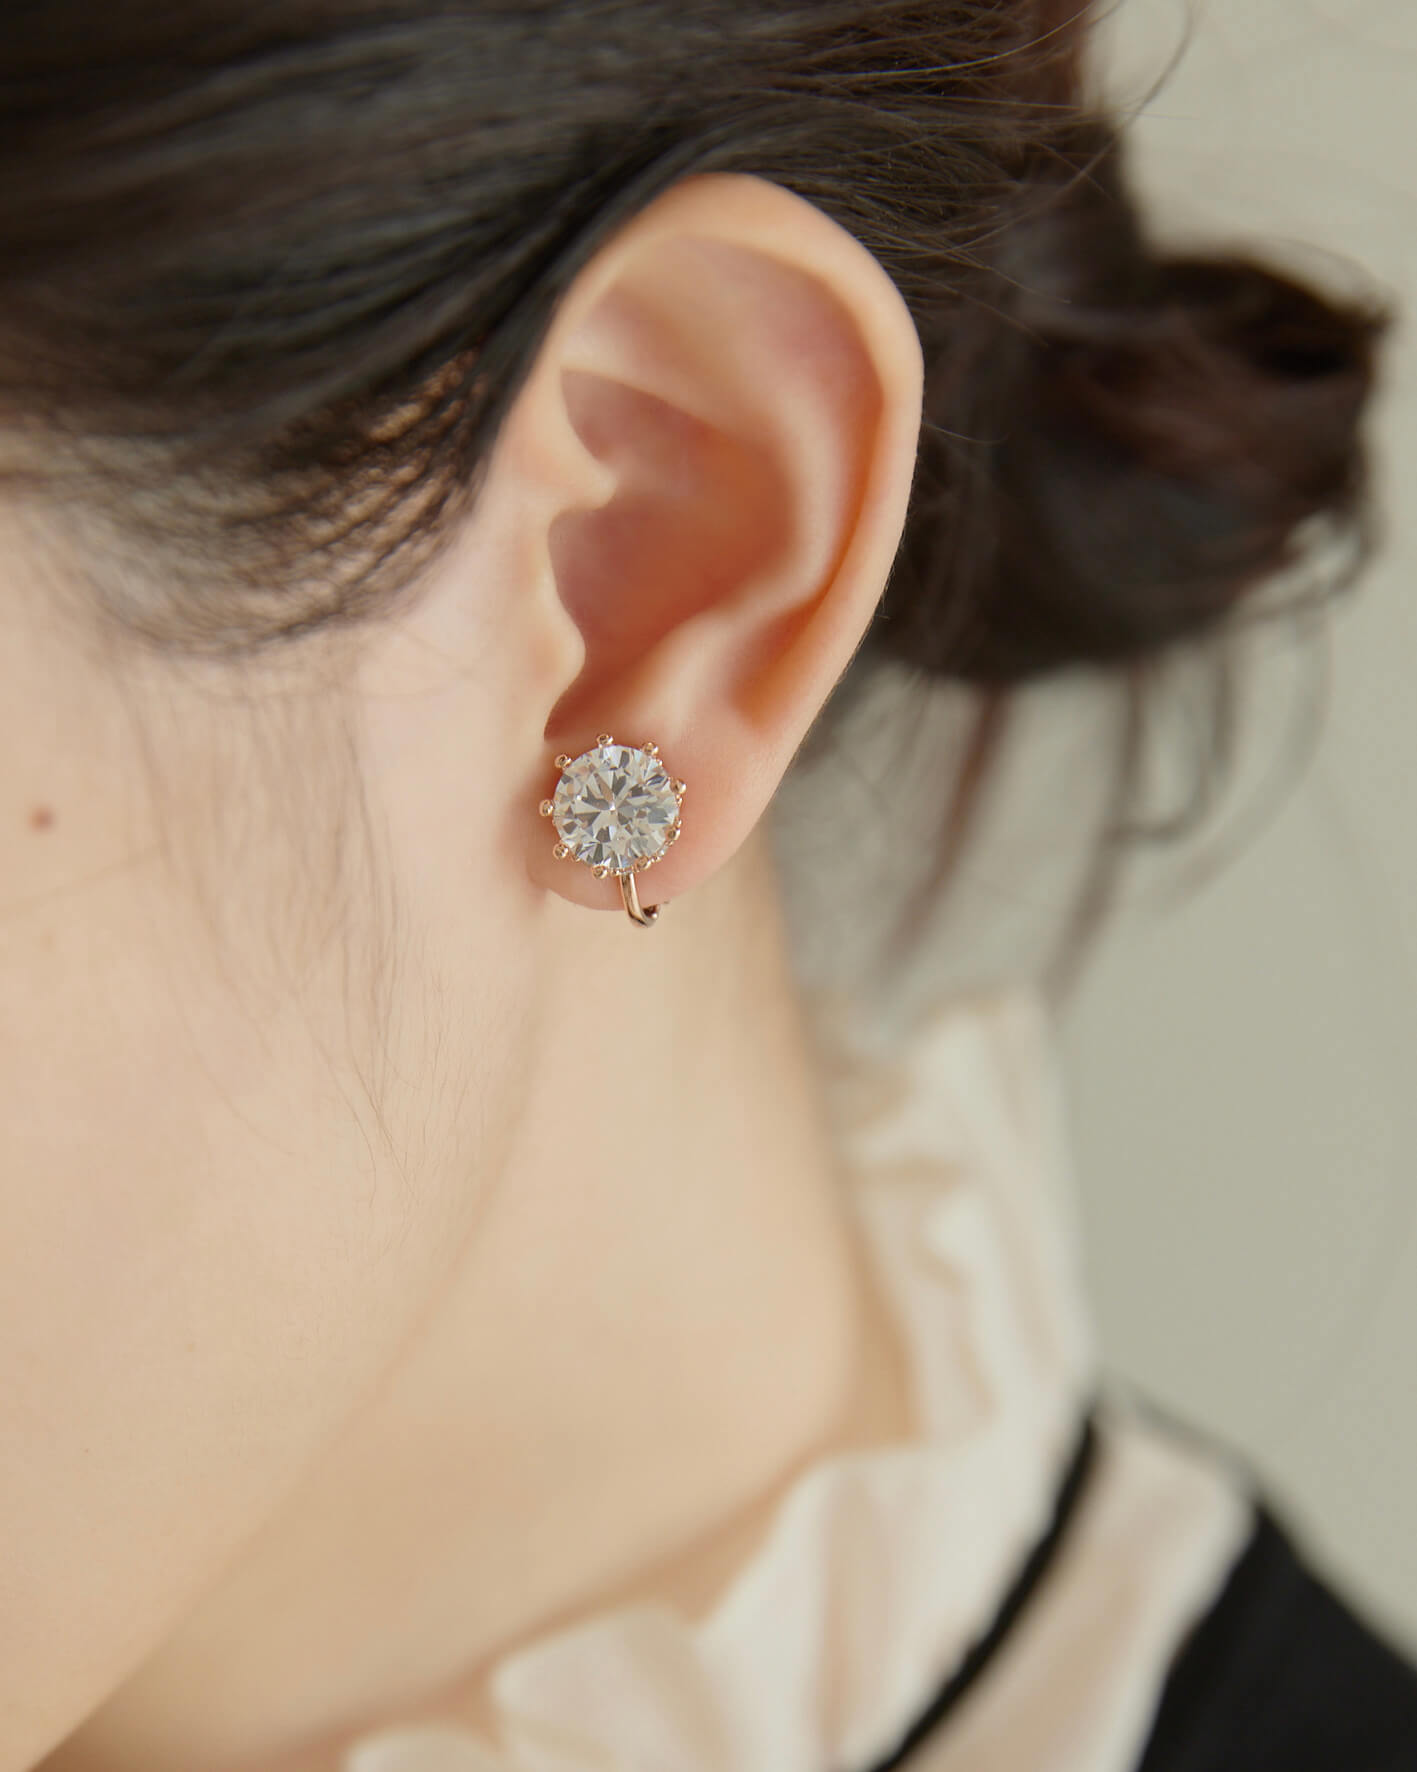 Eco安珂,韓國飾品,韓國耳環,韓國耳骨夾,螺旋夾耳環,可調式耳夾耳環,單鑽螺旋夾耳環